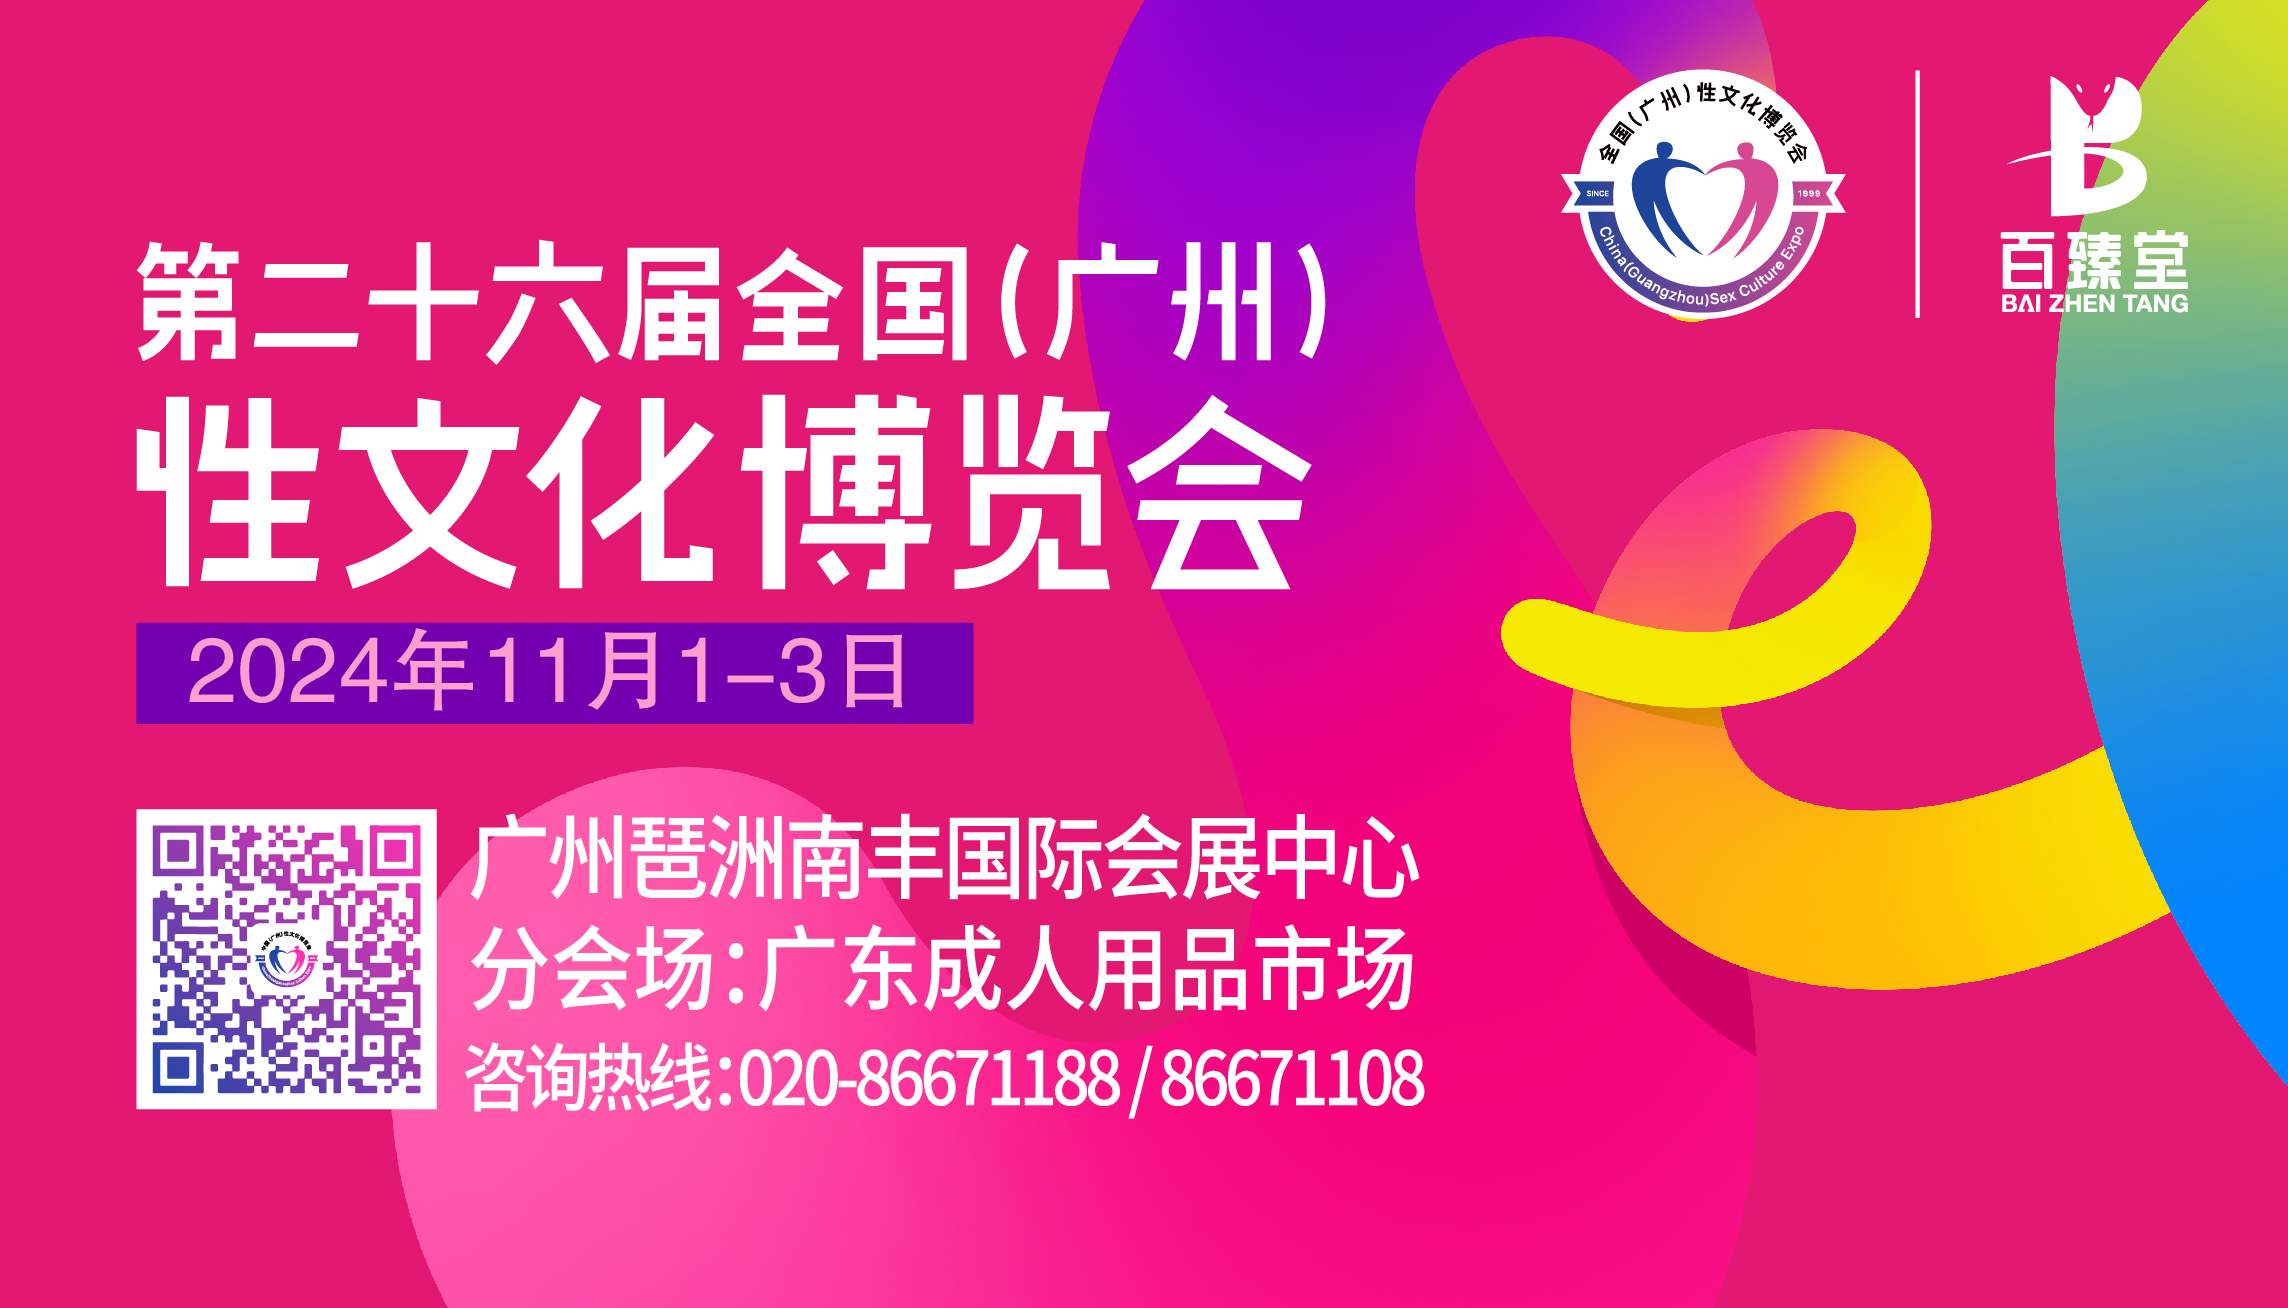 2024广州性文化博览会启航，全面升级展览规模！